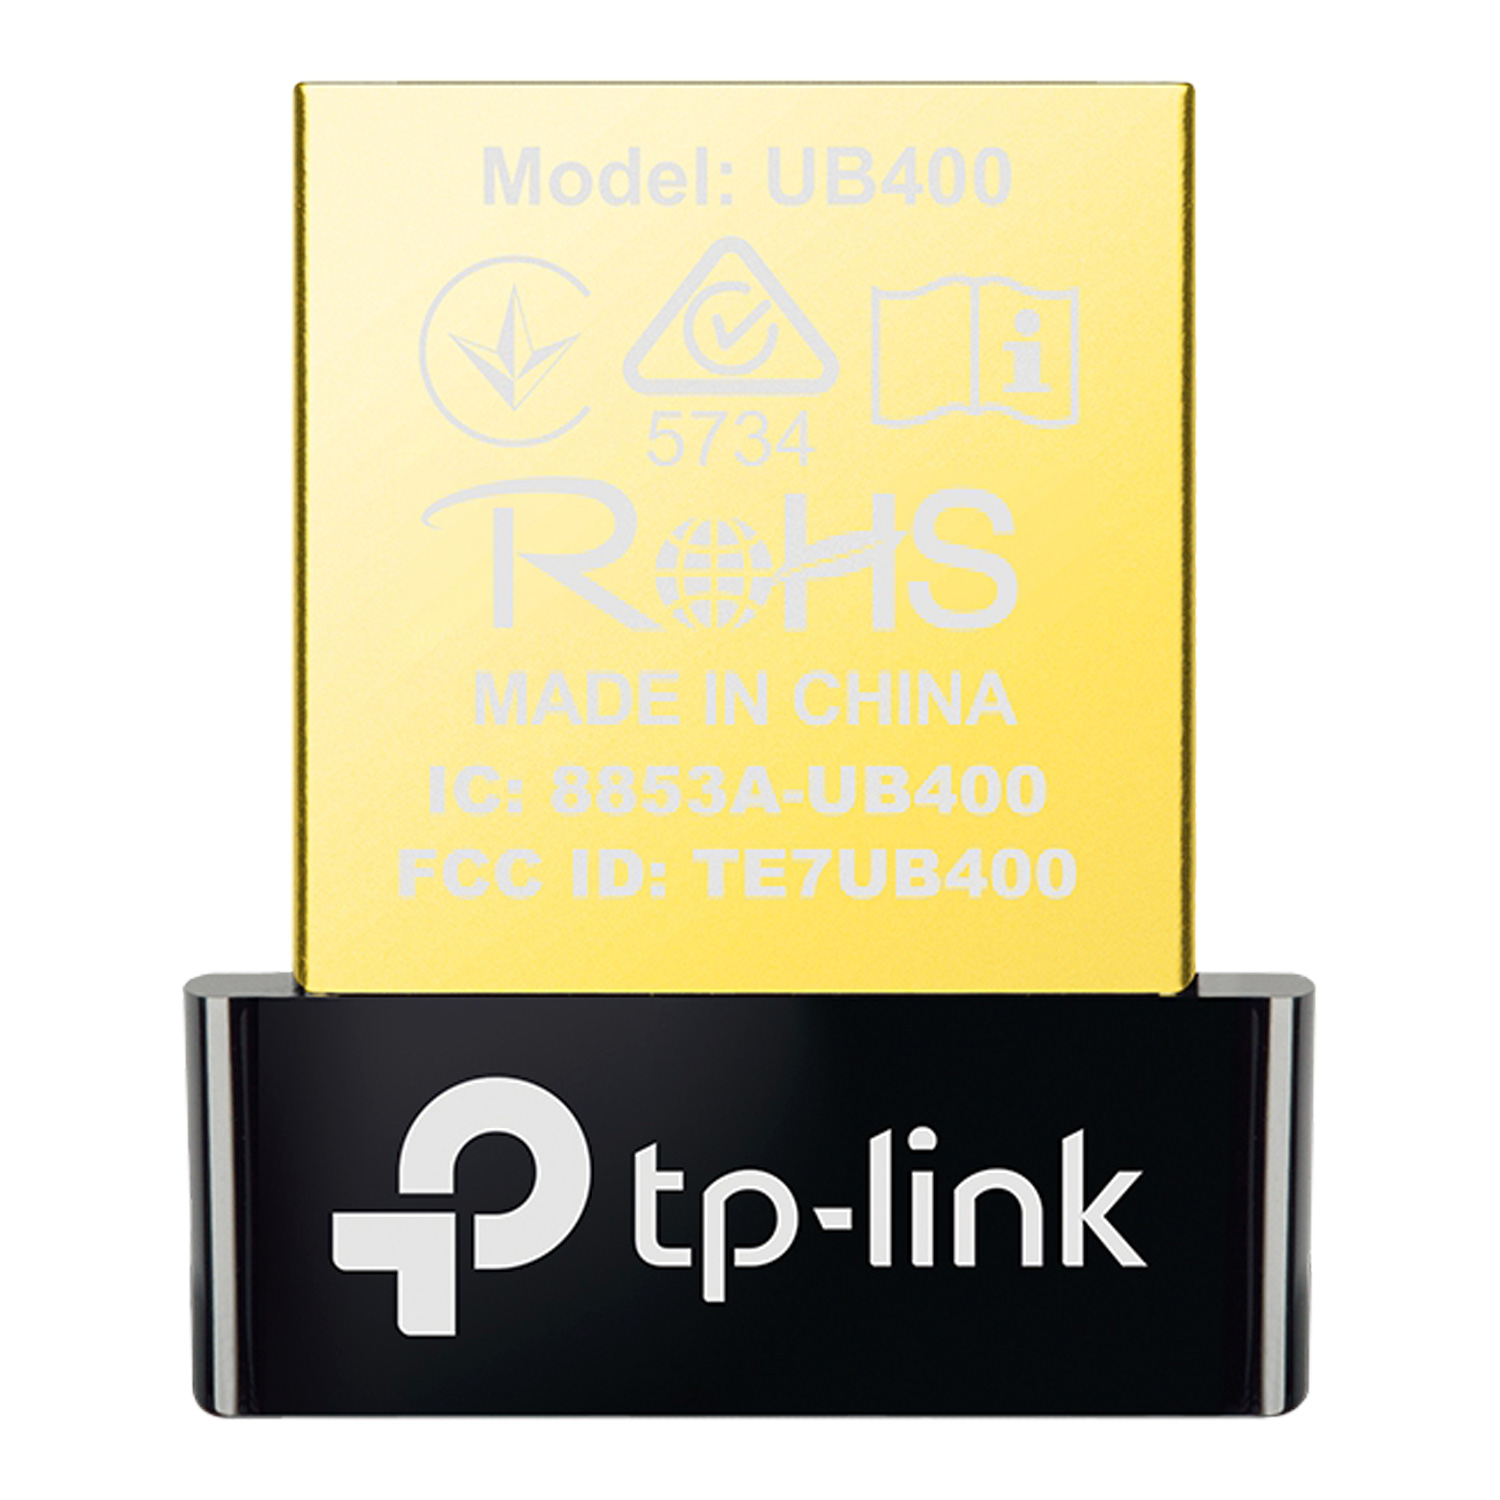 Adaptador TP-Link UB400 Nano USB / Bluetooth 4.0